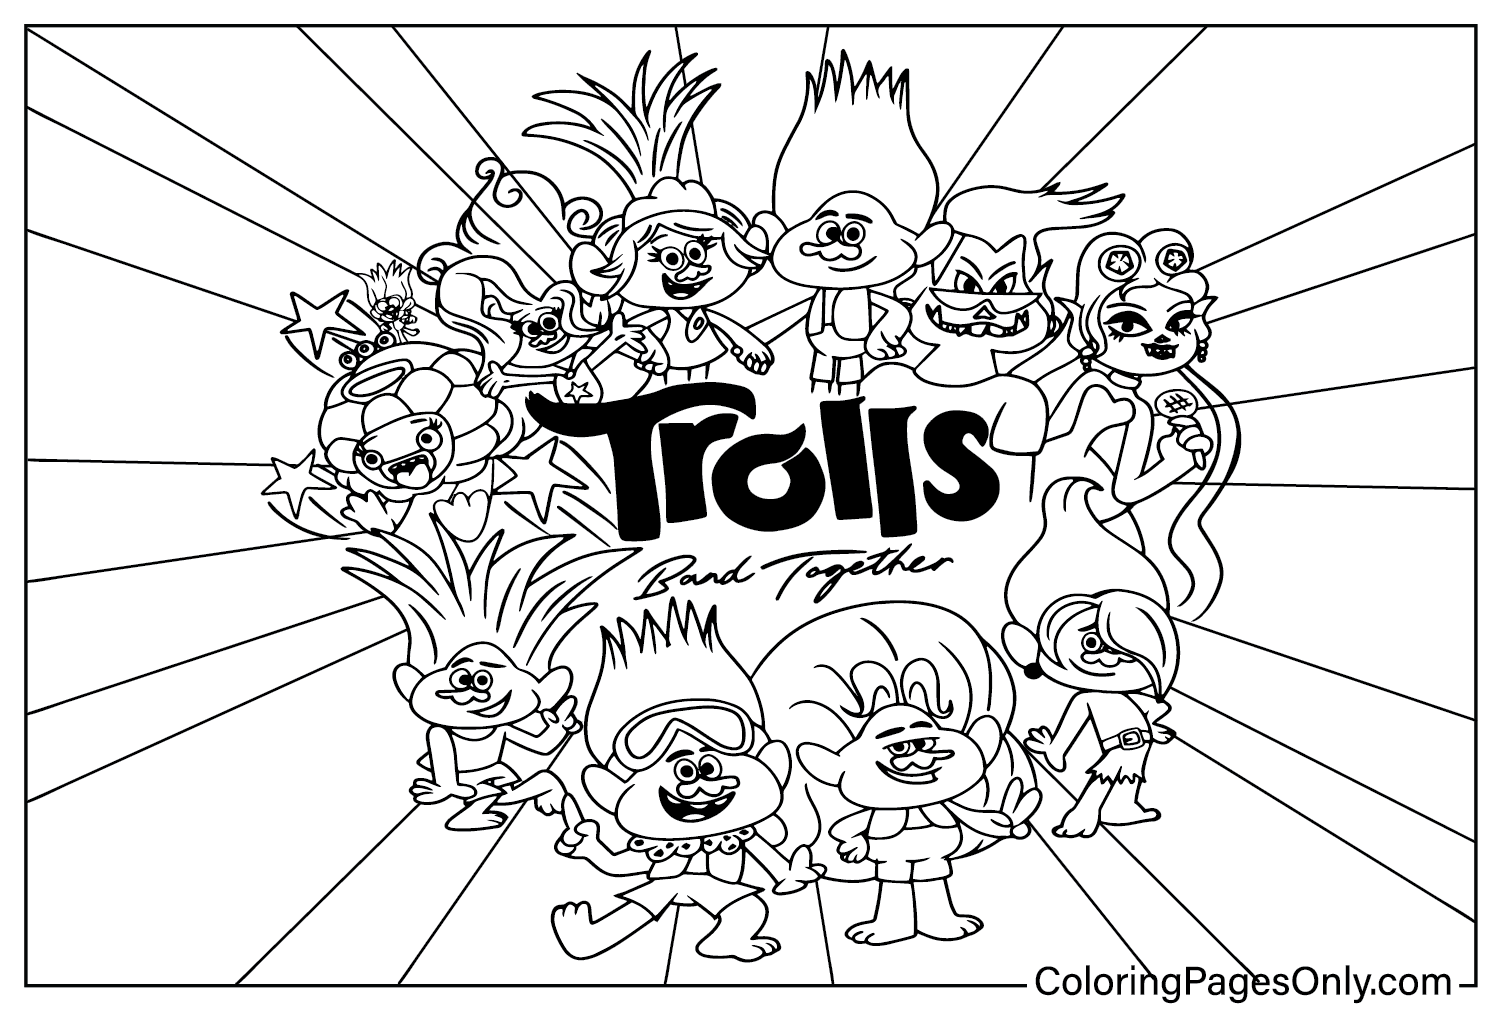 Trolls Band Together kleurplaat voor volwassenen van Trolls Band Together